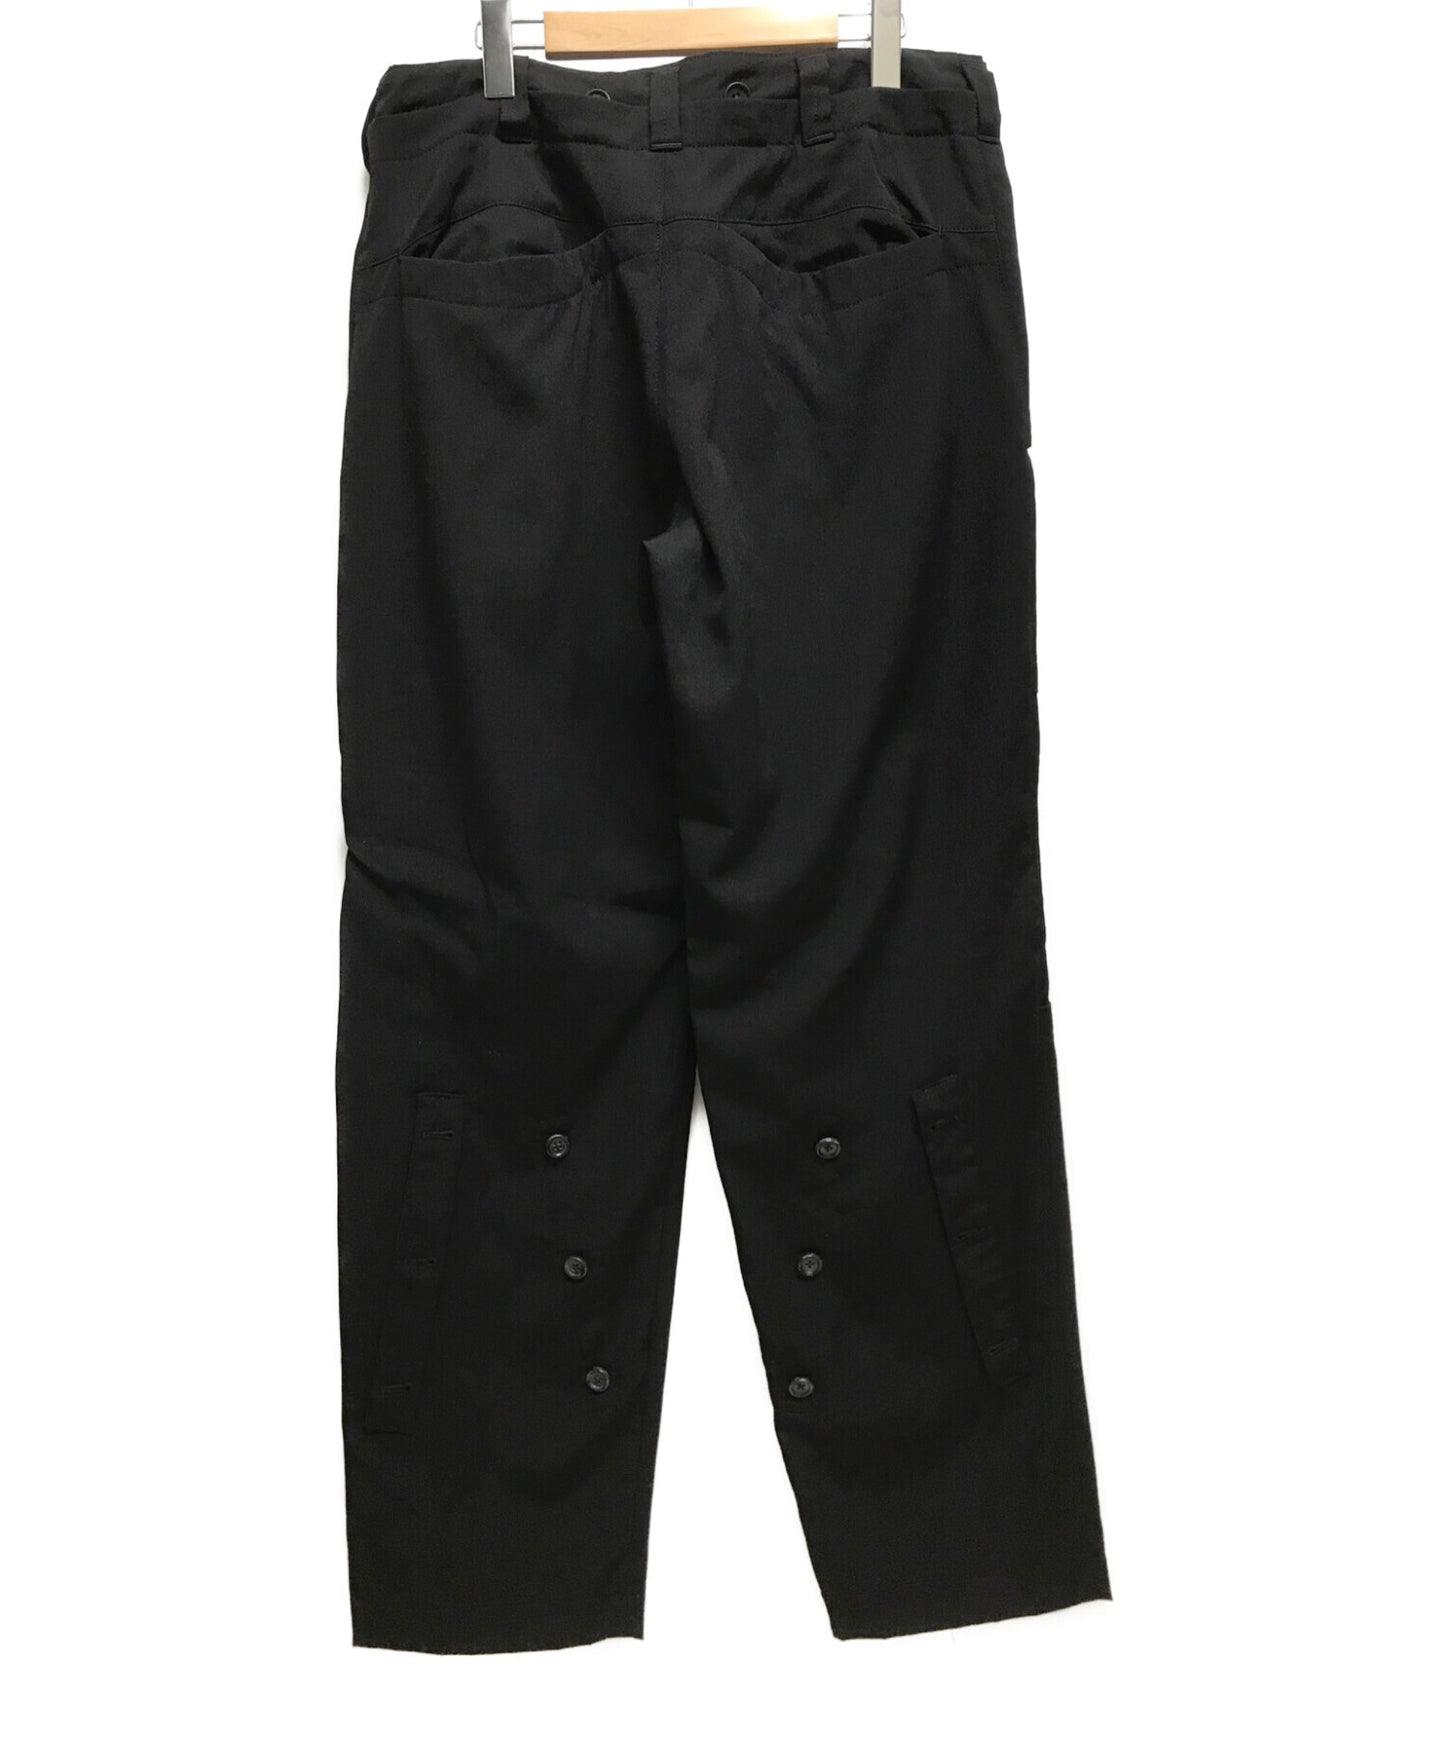 กางเกง Jodhpurs ที่ดัดแปลงของ Y การออกแบบปุ่มกว้างการออกแบบ unisex MX-P17-100